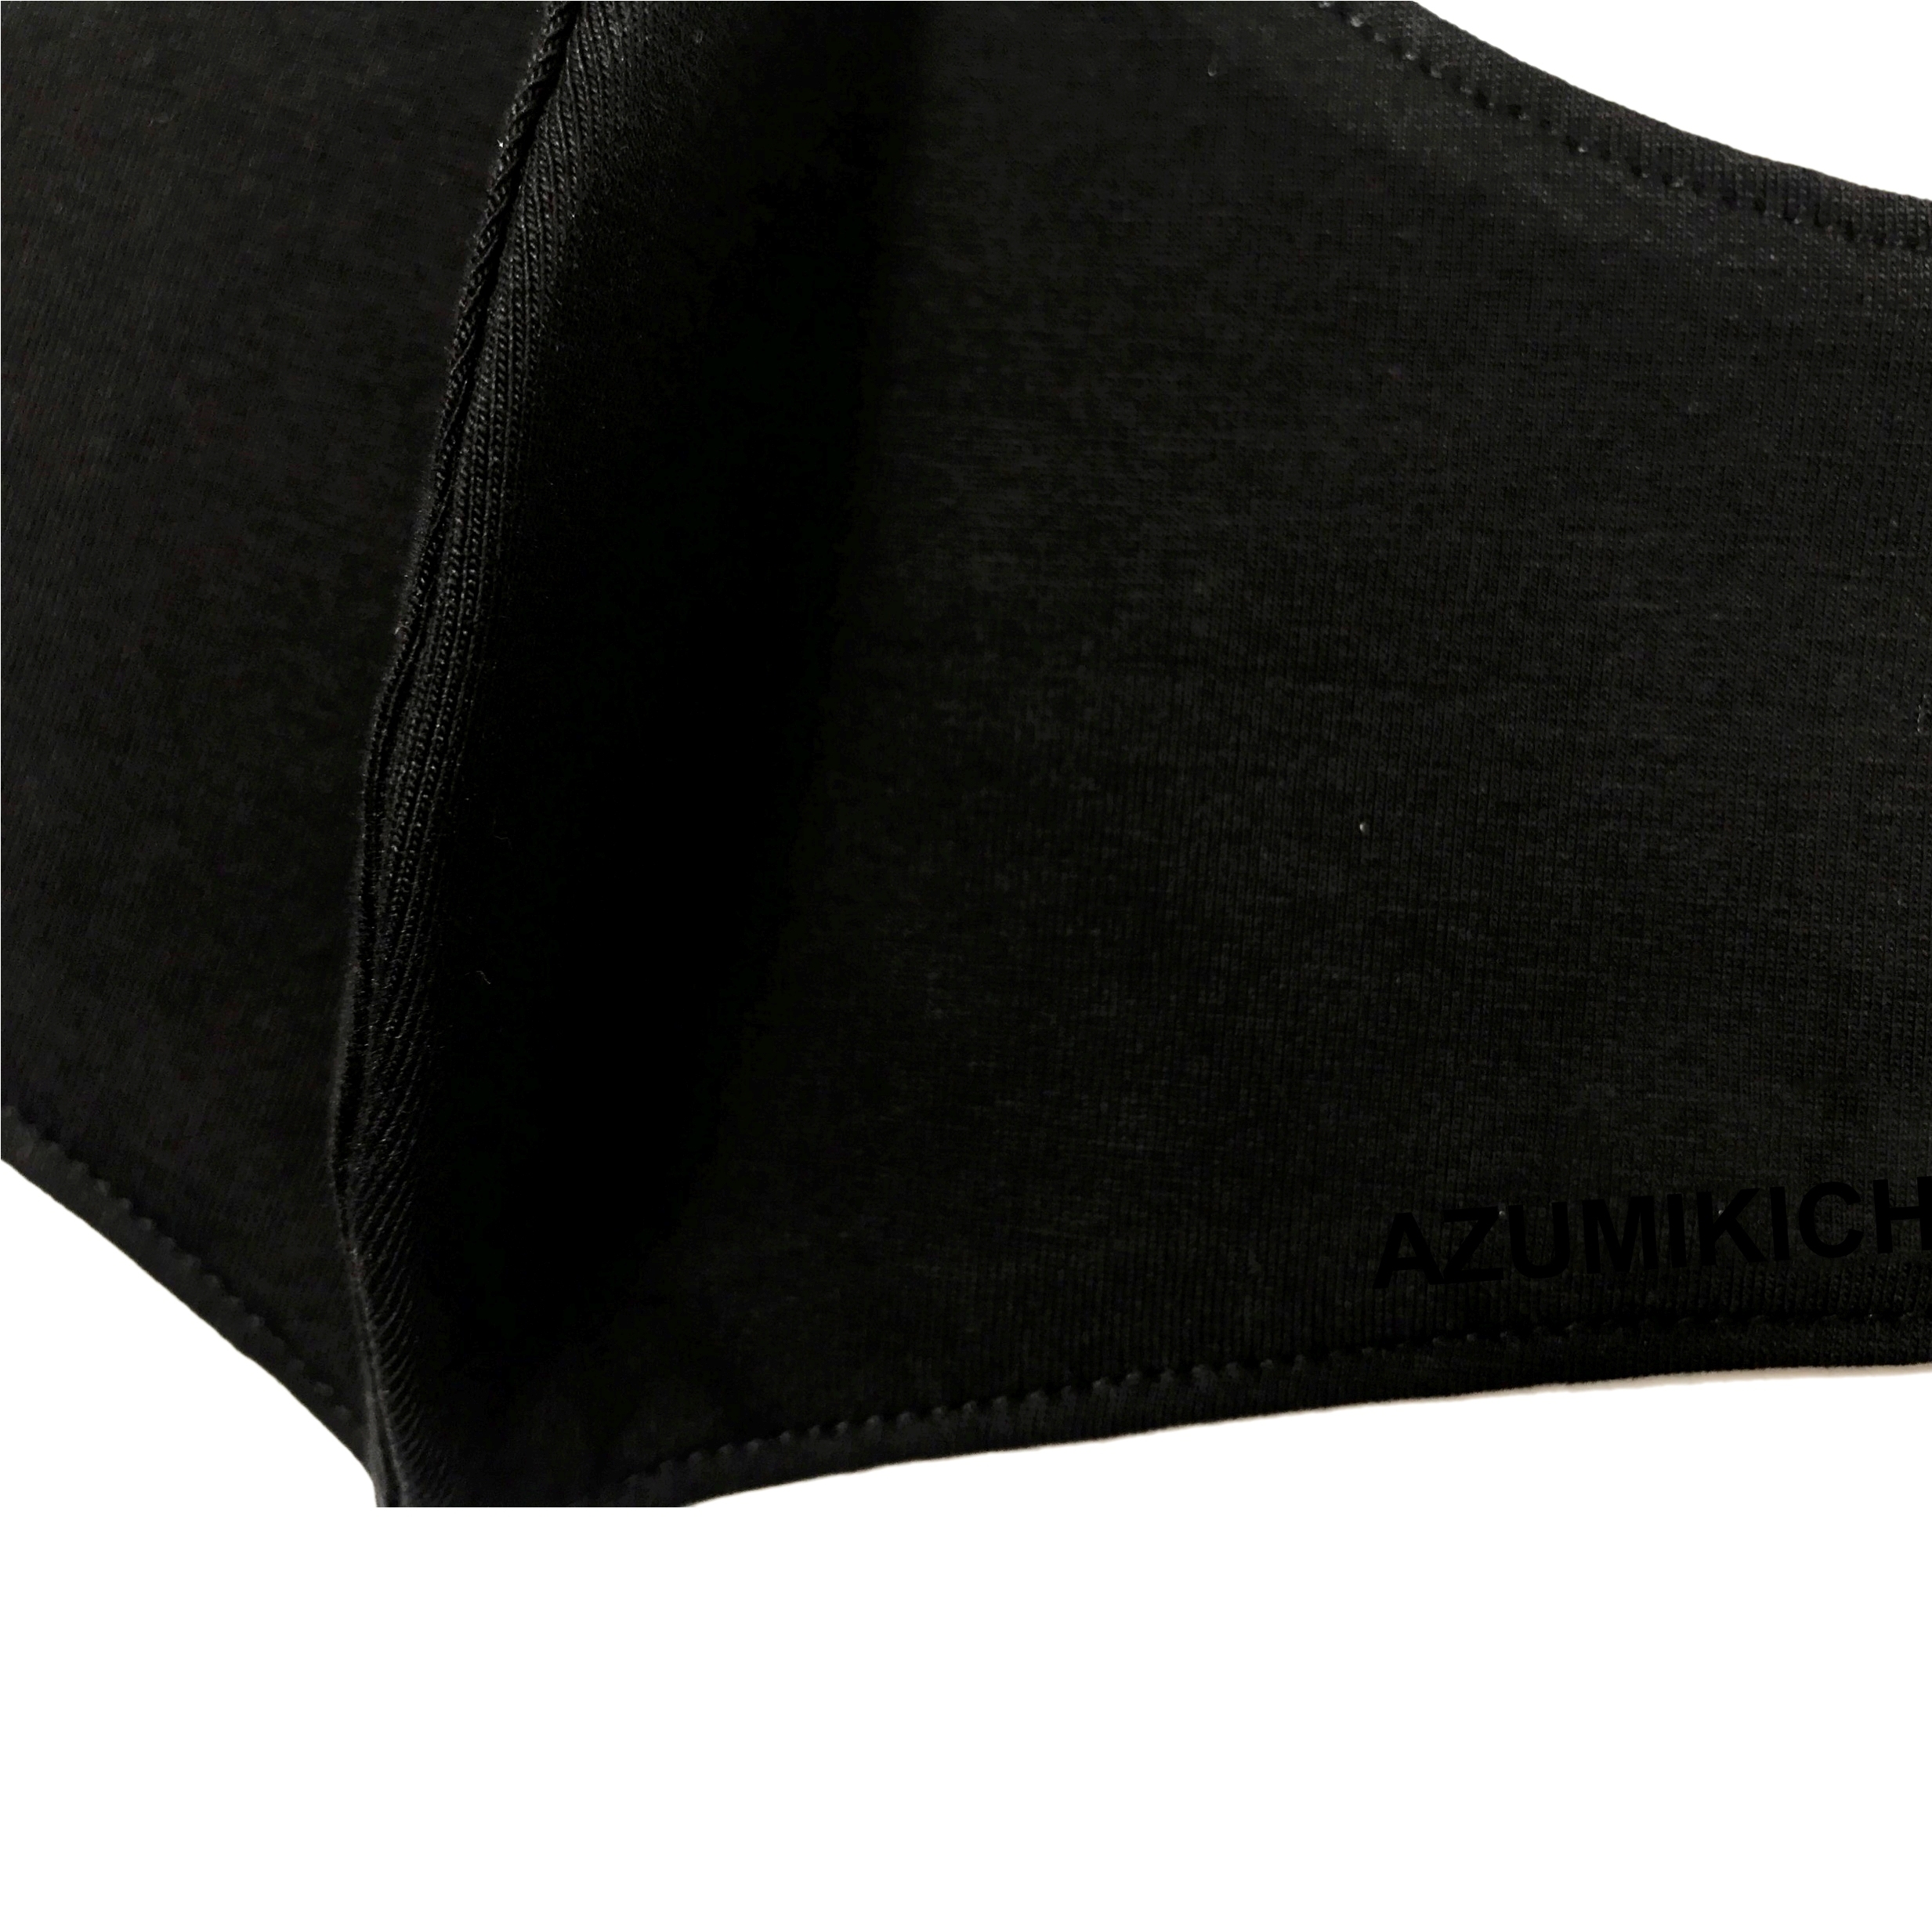 Khẩu trang vải Azumikichi màu đen, khẩu trang thời trang cao cấp sang trọng